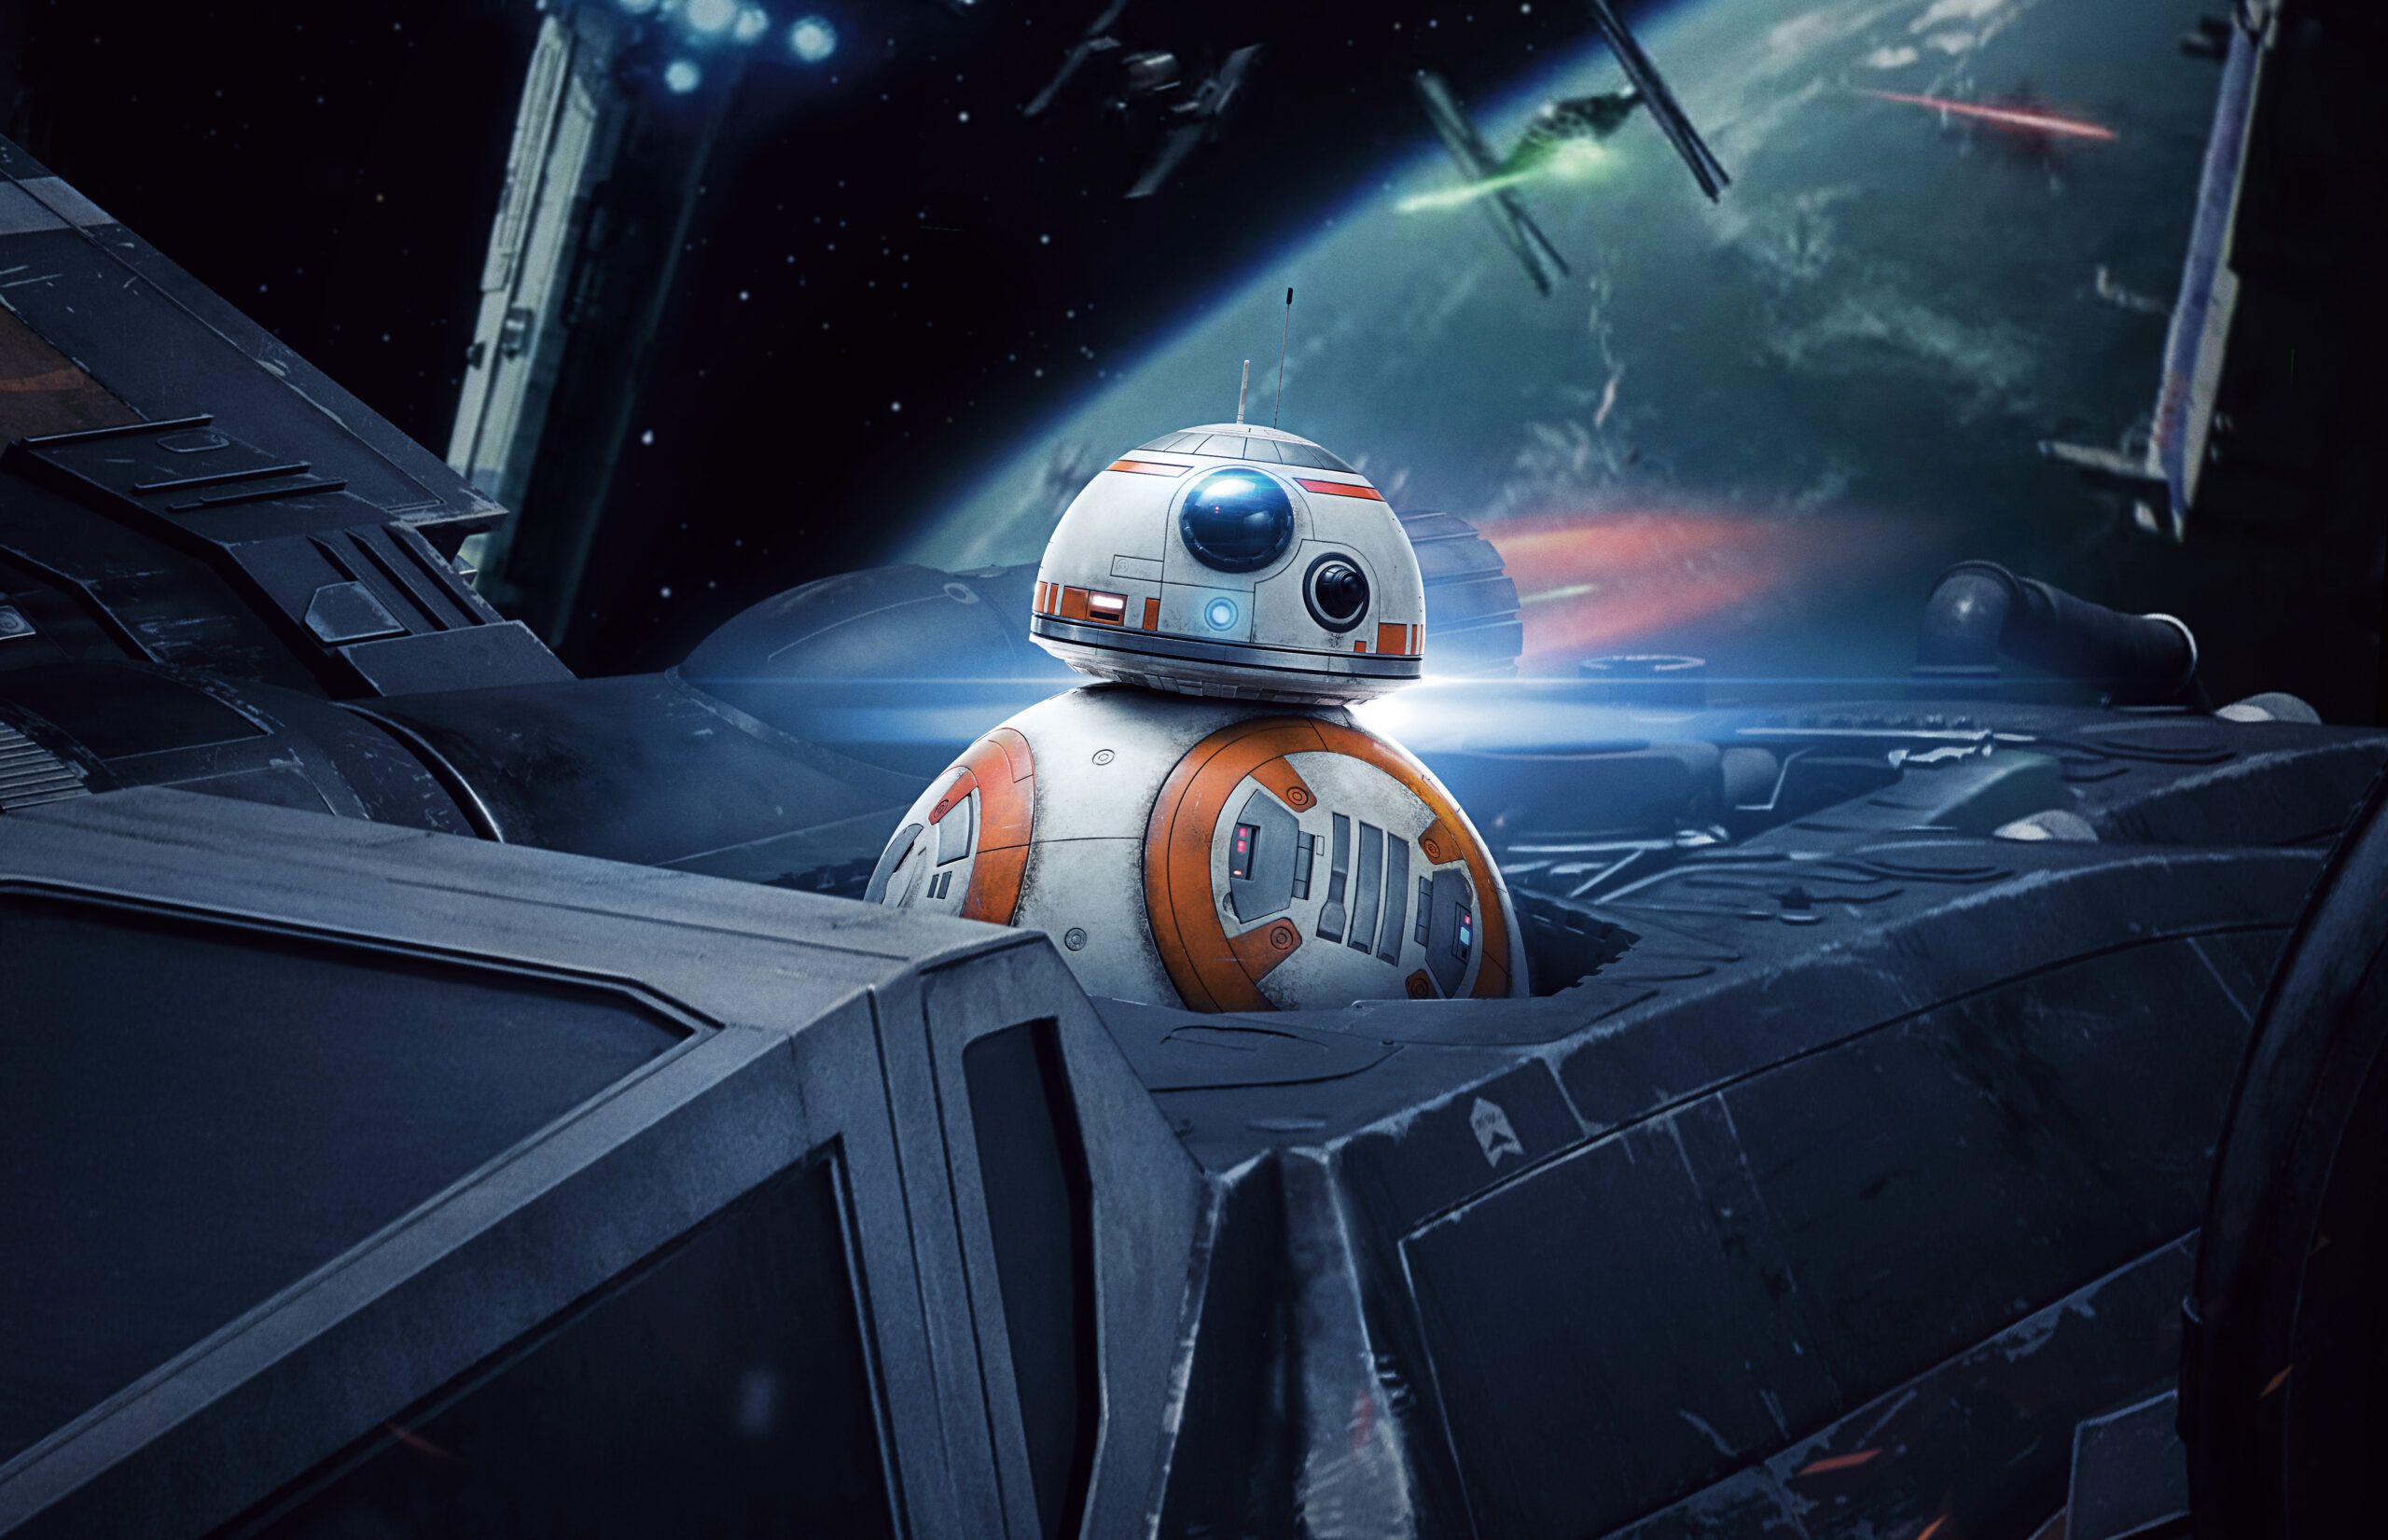 Beautiful Star Wars 4K (Ultra HD) Wallpaper